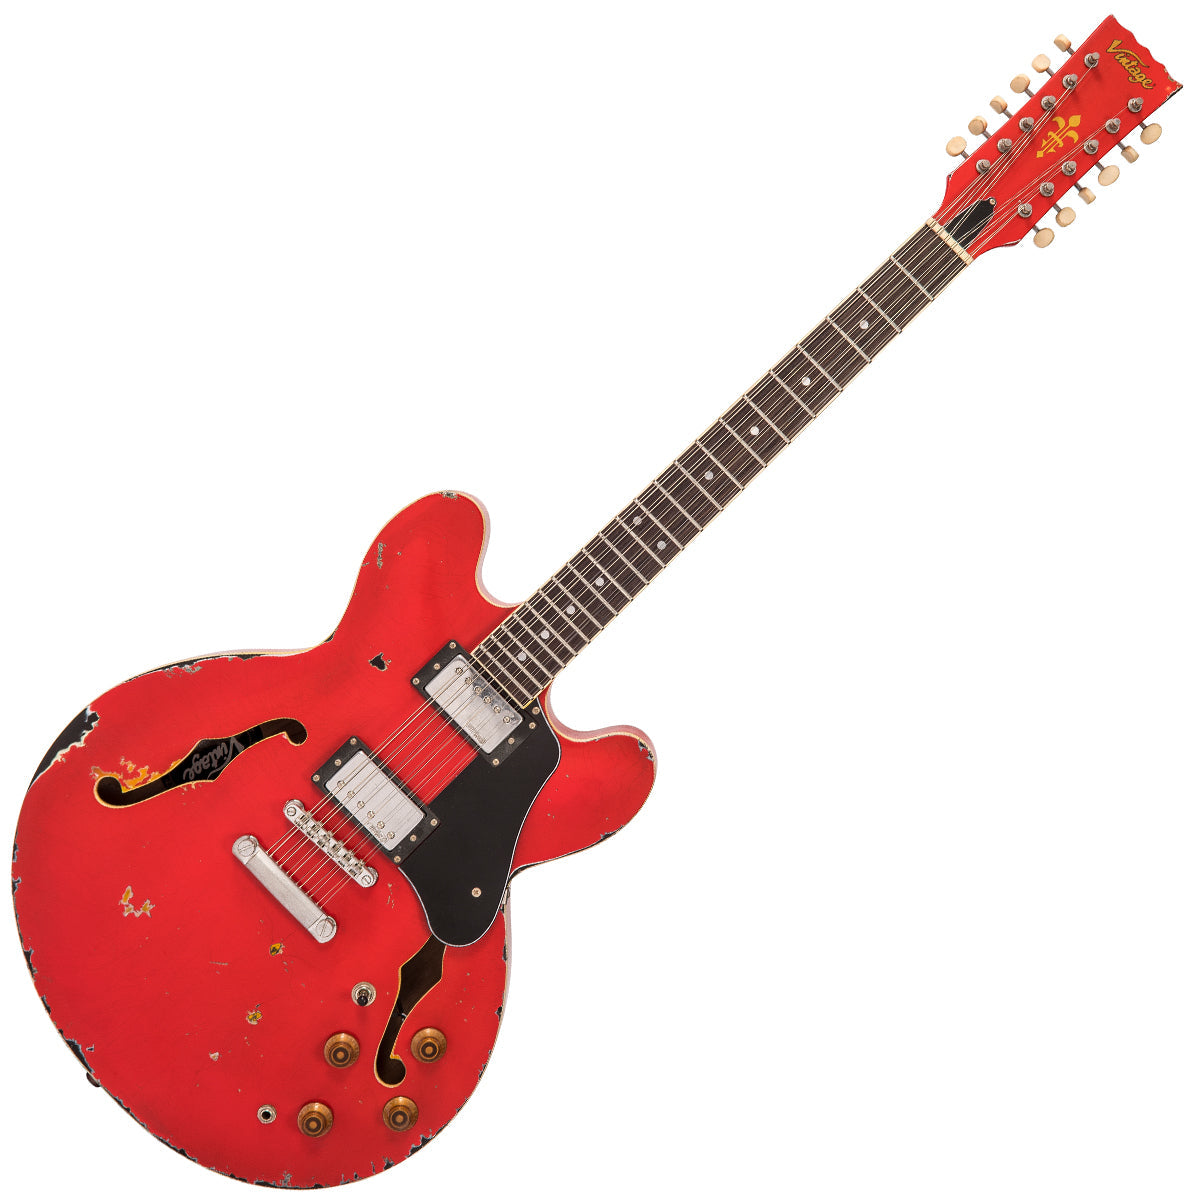 SOLD - Vintage VSA500-12 ProShop Unique ~ Aged Red over Sunburst, Electrics for sale at Richards Guitars.